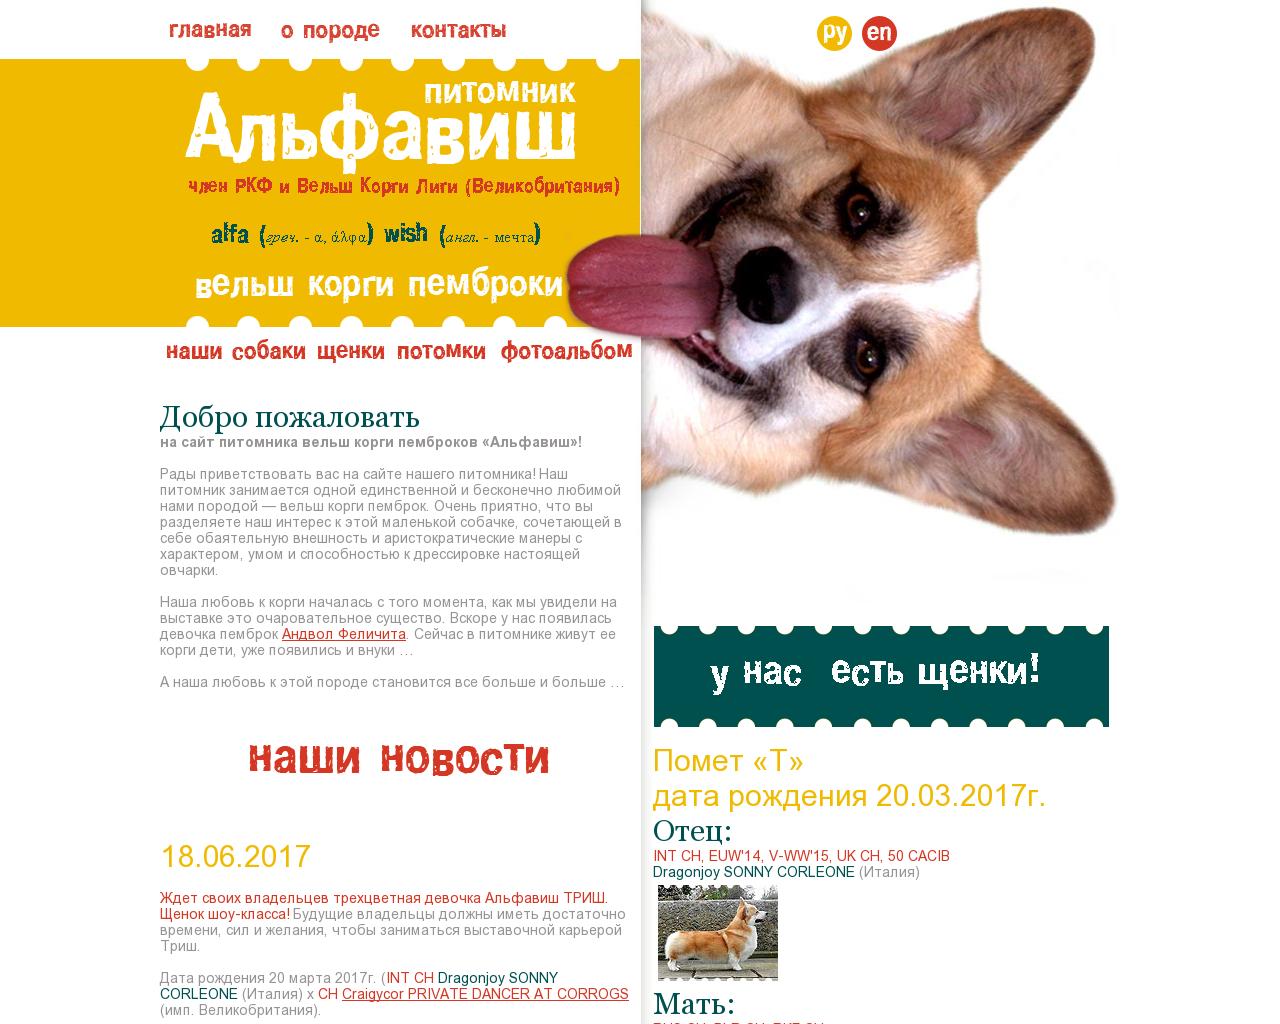 Изображение сайта alfawish.ru в разрешении 1280x1024